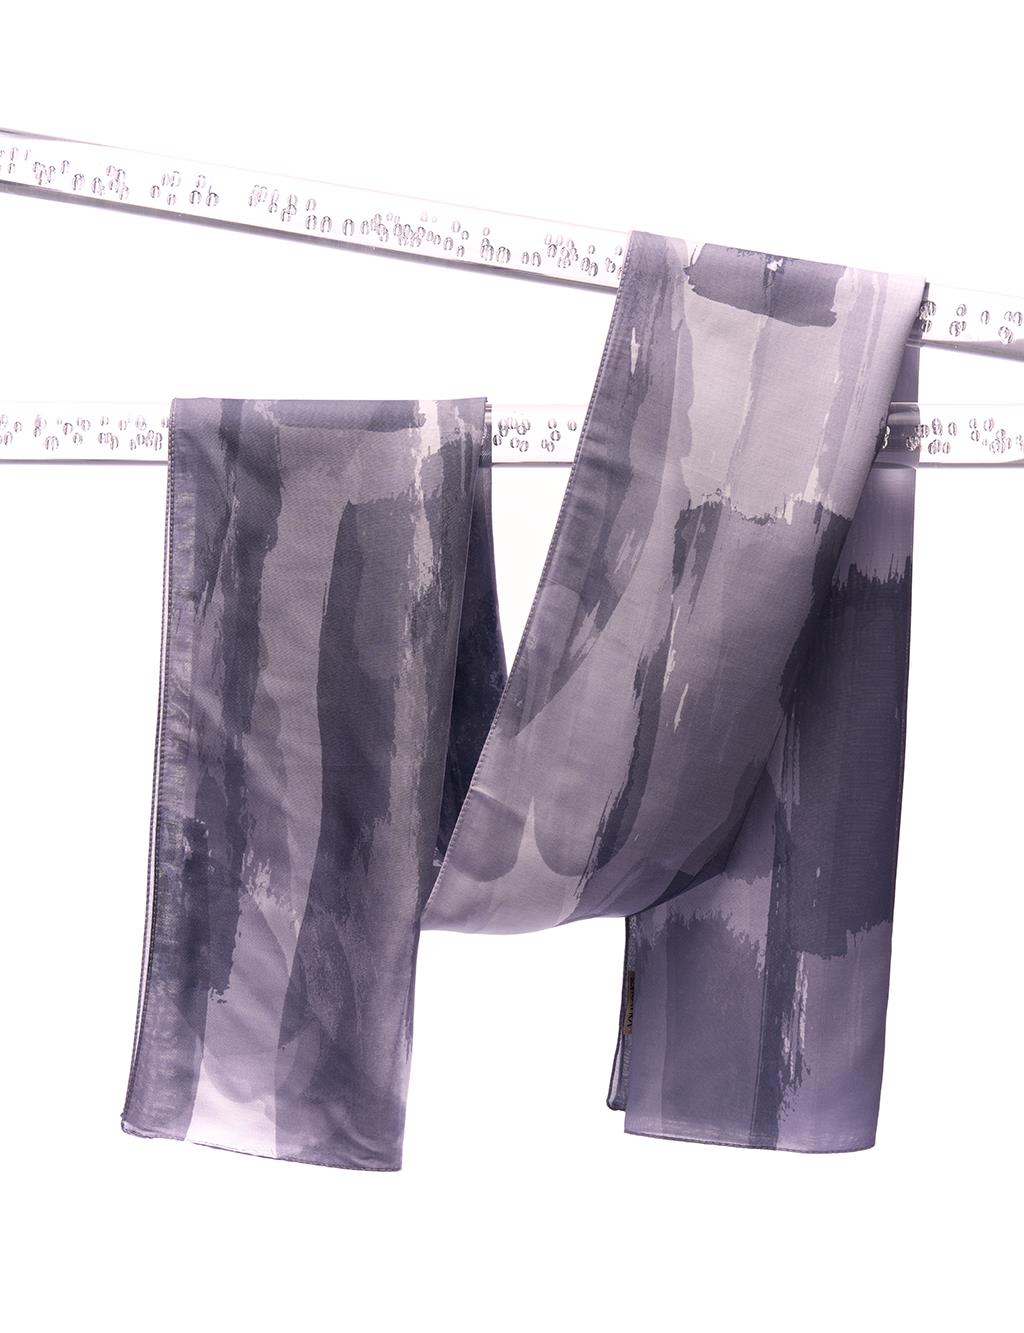 Шаль с цифровым принтом и абстрактным узором, антрацит Kayra шаль с абстрактным узором антрацит kayra